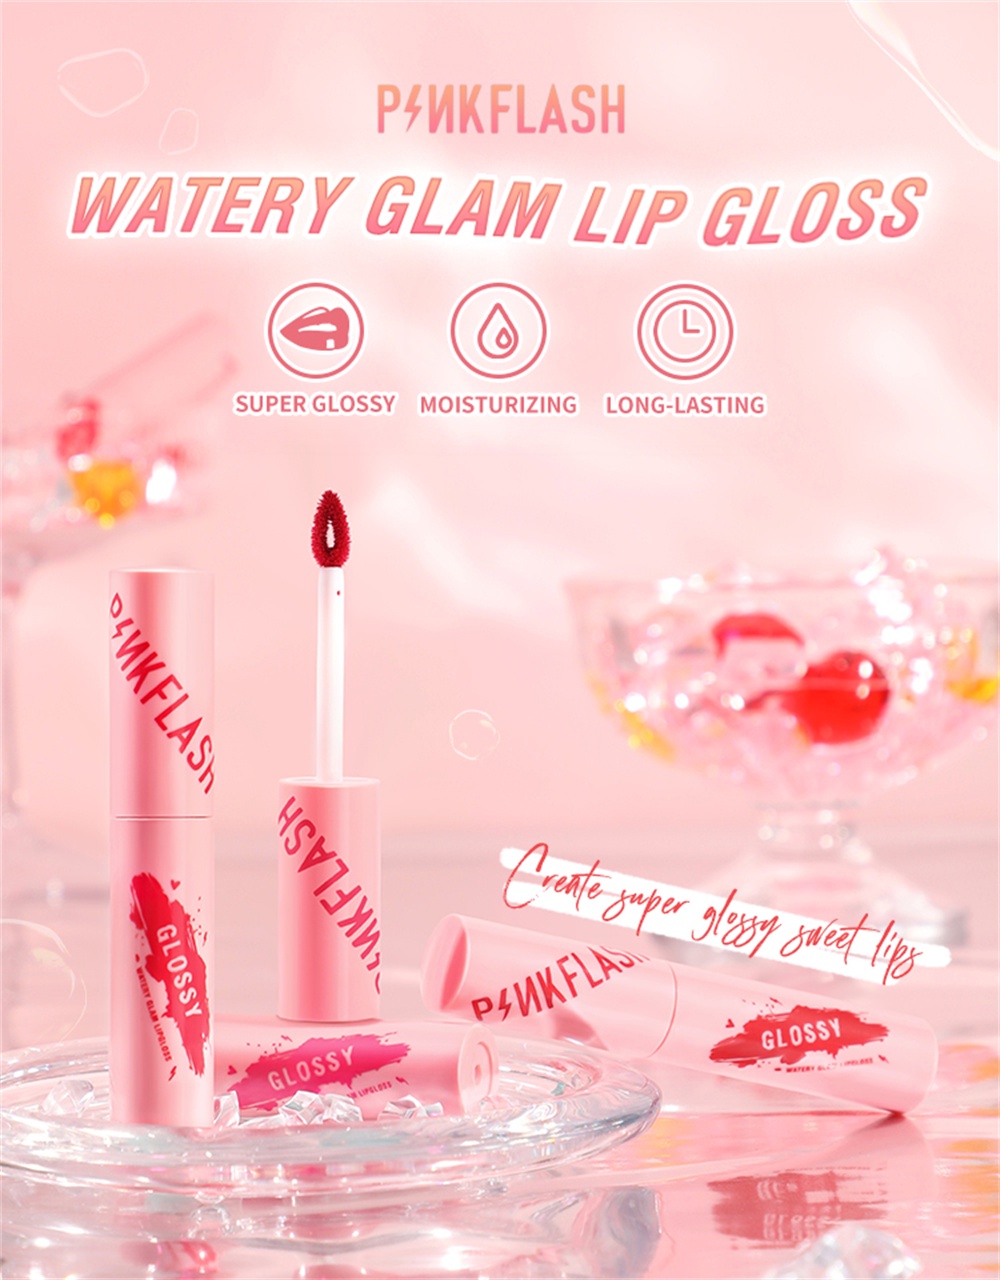 ข้อมูลเกี่ยวกับ Pinkflash Watery Glam 9 Colors ลิปกลอสให้ความชุ่มชื้นติดทนนาน